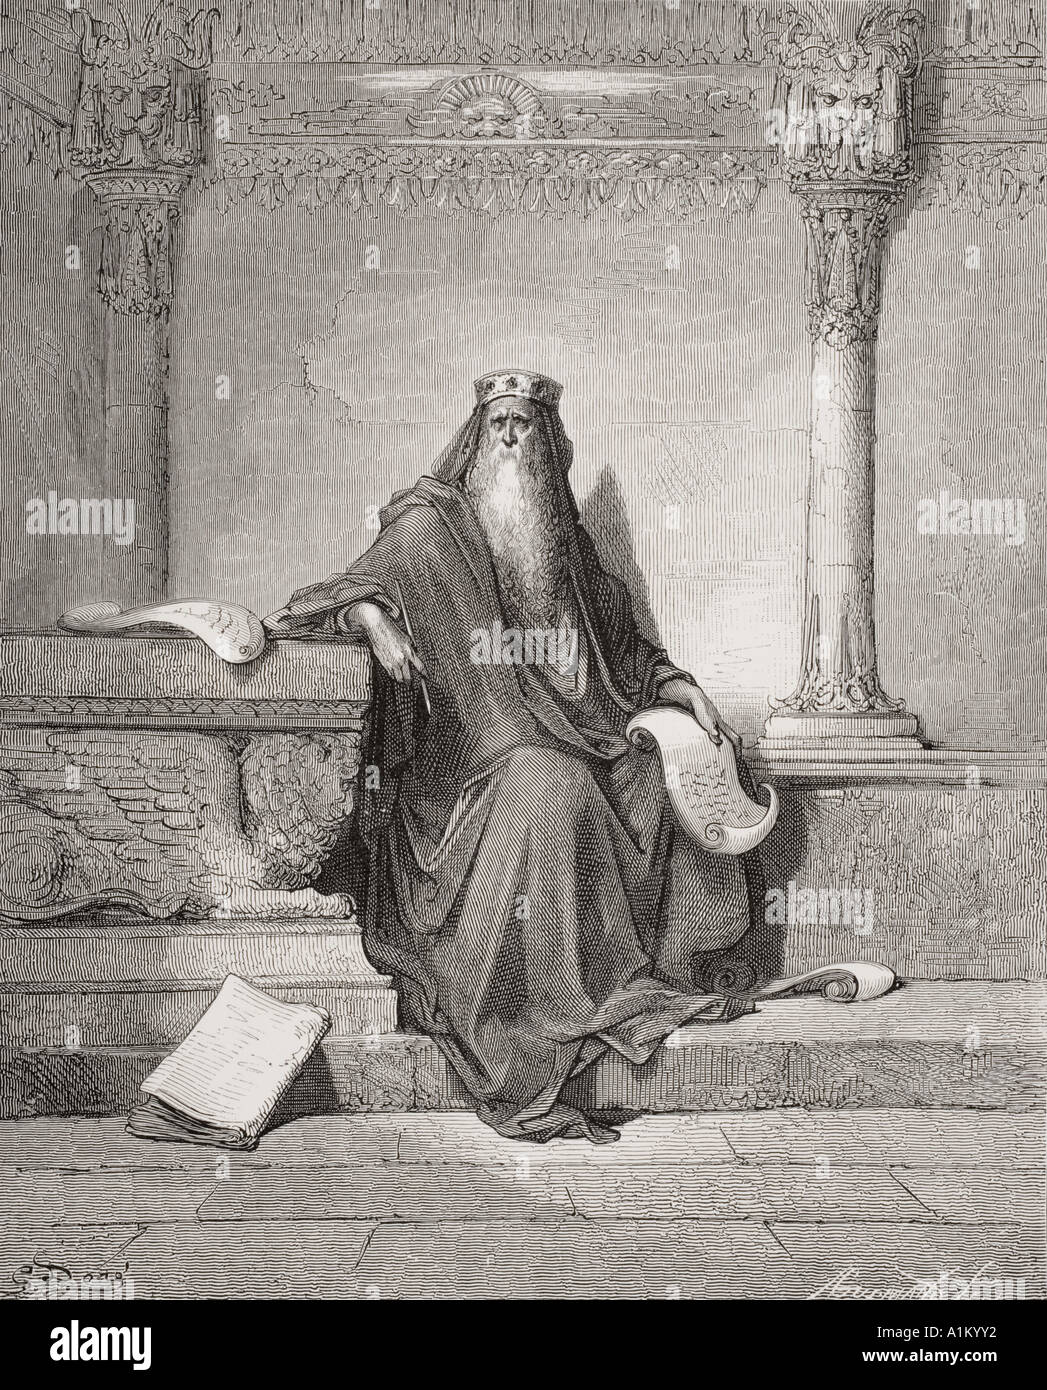 Gravure de la Dore illustrant la Bible Proverbes i 1. Salomon par Gustave Dore, 1832 - 1883. Artiste et illustrateur français Banque D'Images